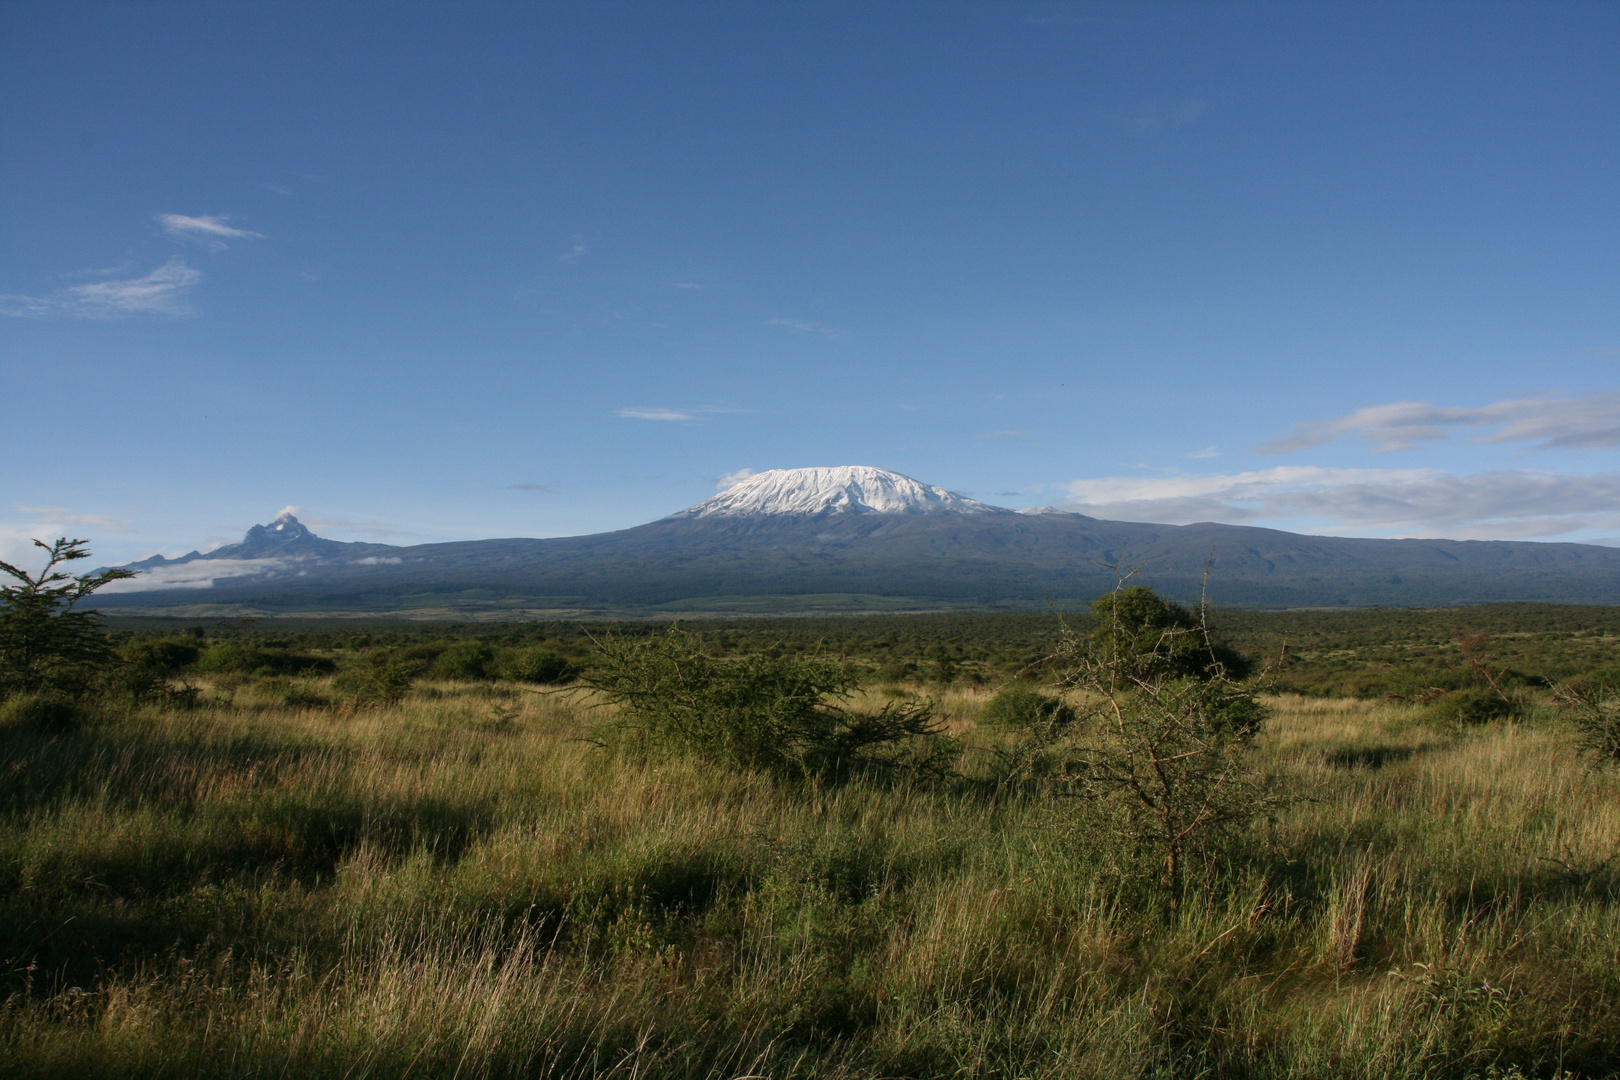 Kilimaniaromassiv von Kenia aus gesehen.